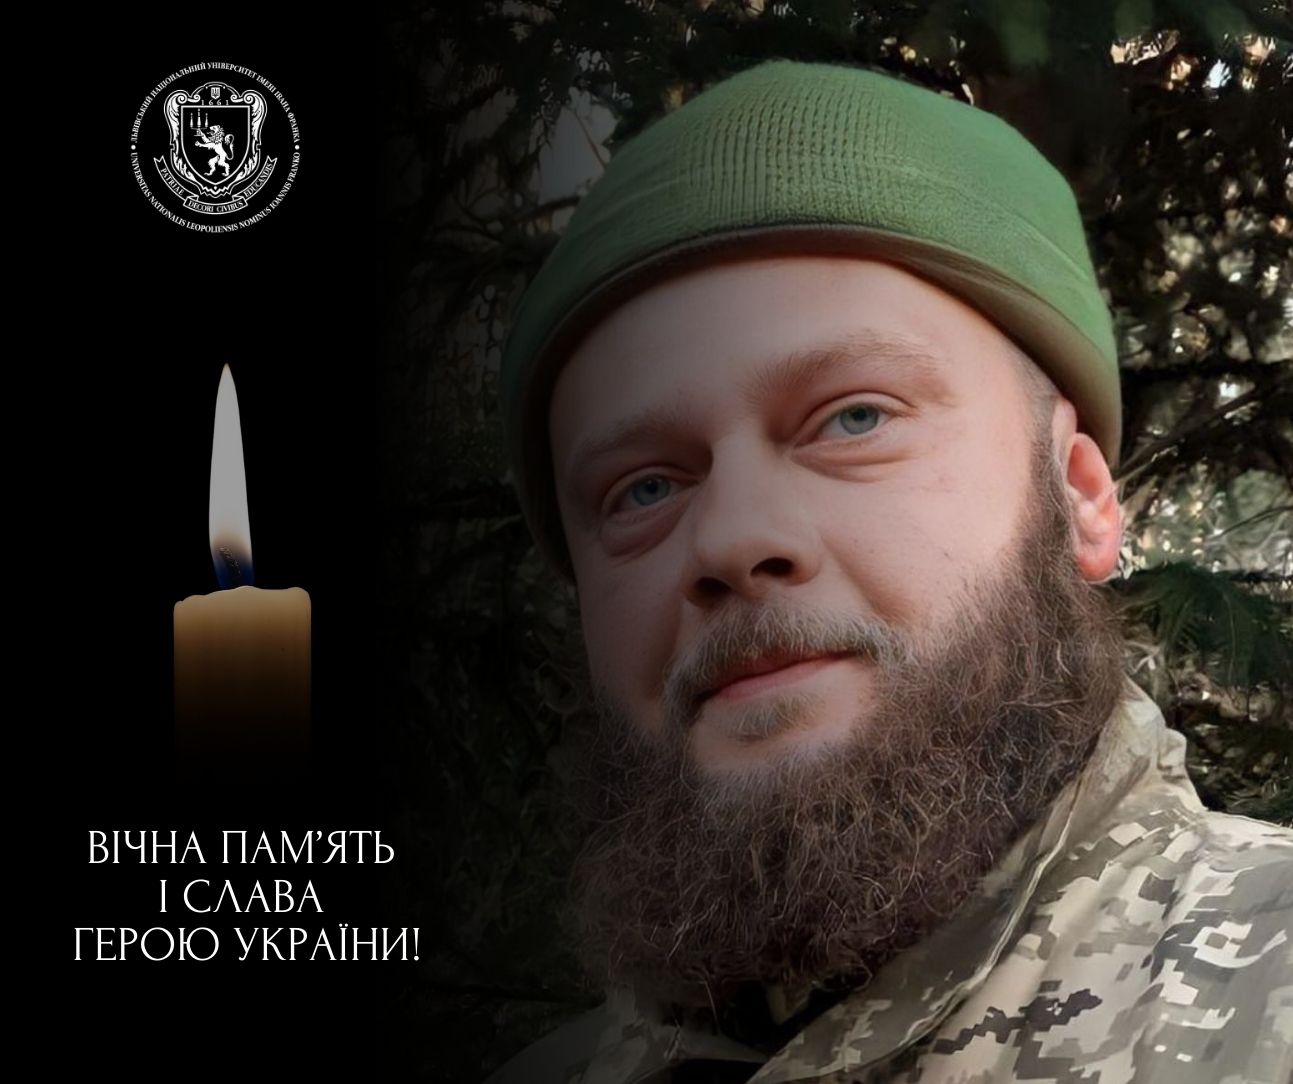 Захищаючи Україну, загинув випускник Університету Орест Ямрос